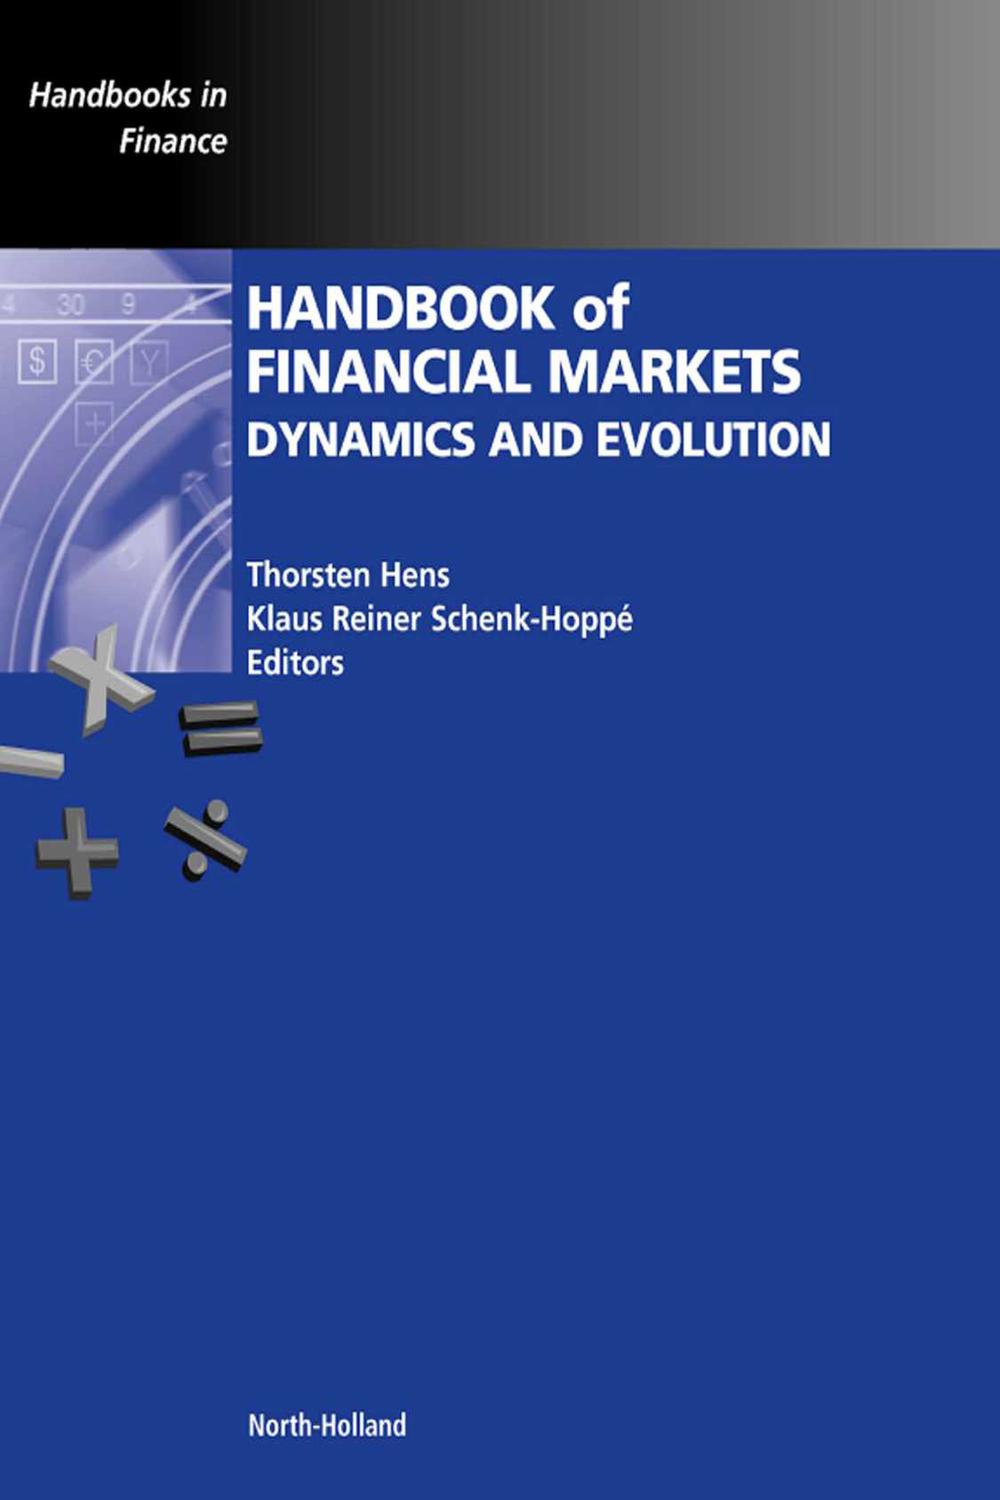 Handbook of Financial Markets: Dynamics and Evolution - Thorsten Hens, Klaus Reiner Schenk-Hoppe